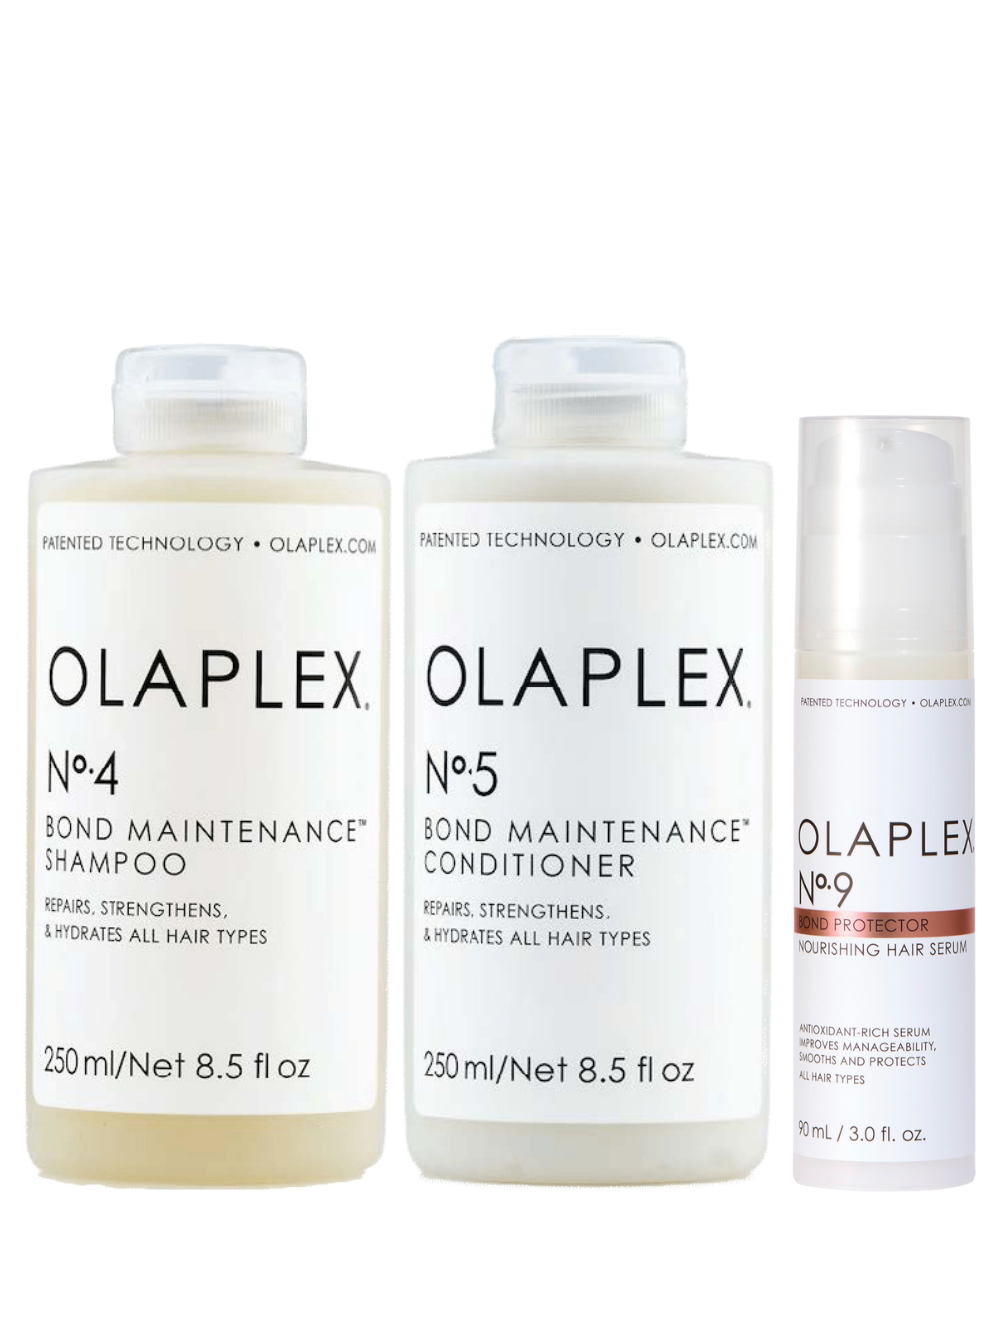 Olaplex Shampoo, Conditioner and Serum Set (No.4 + No.5 +No.9)